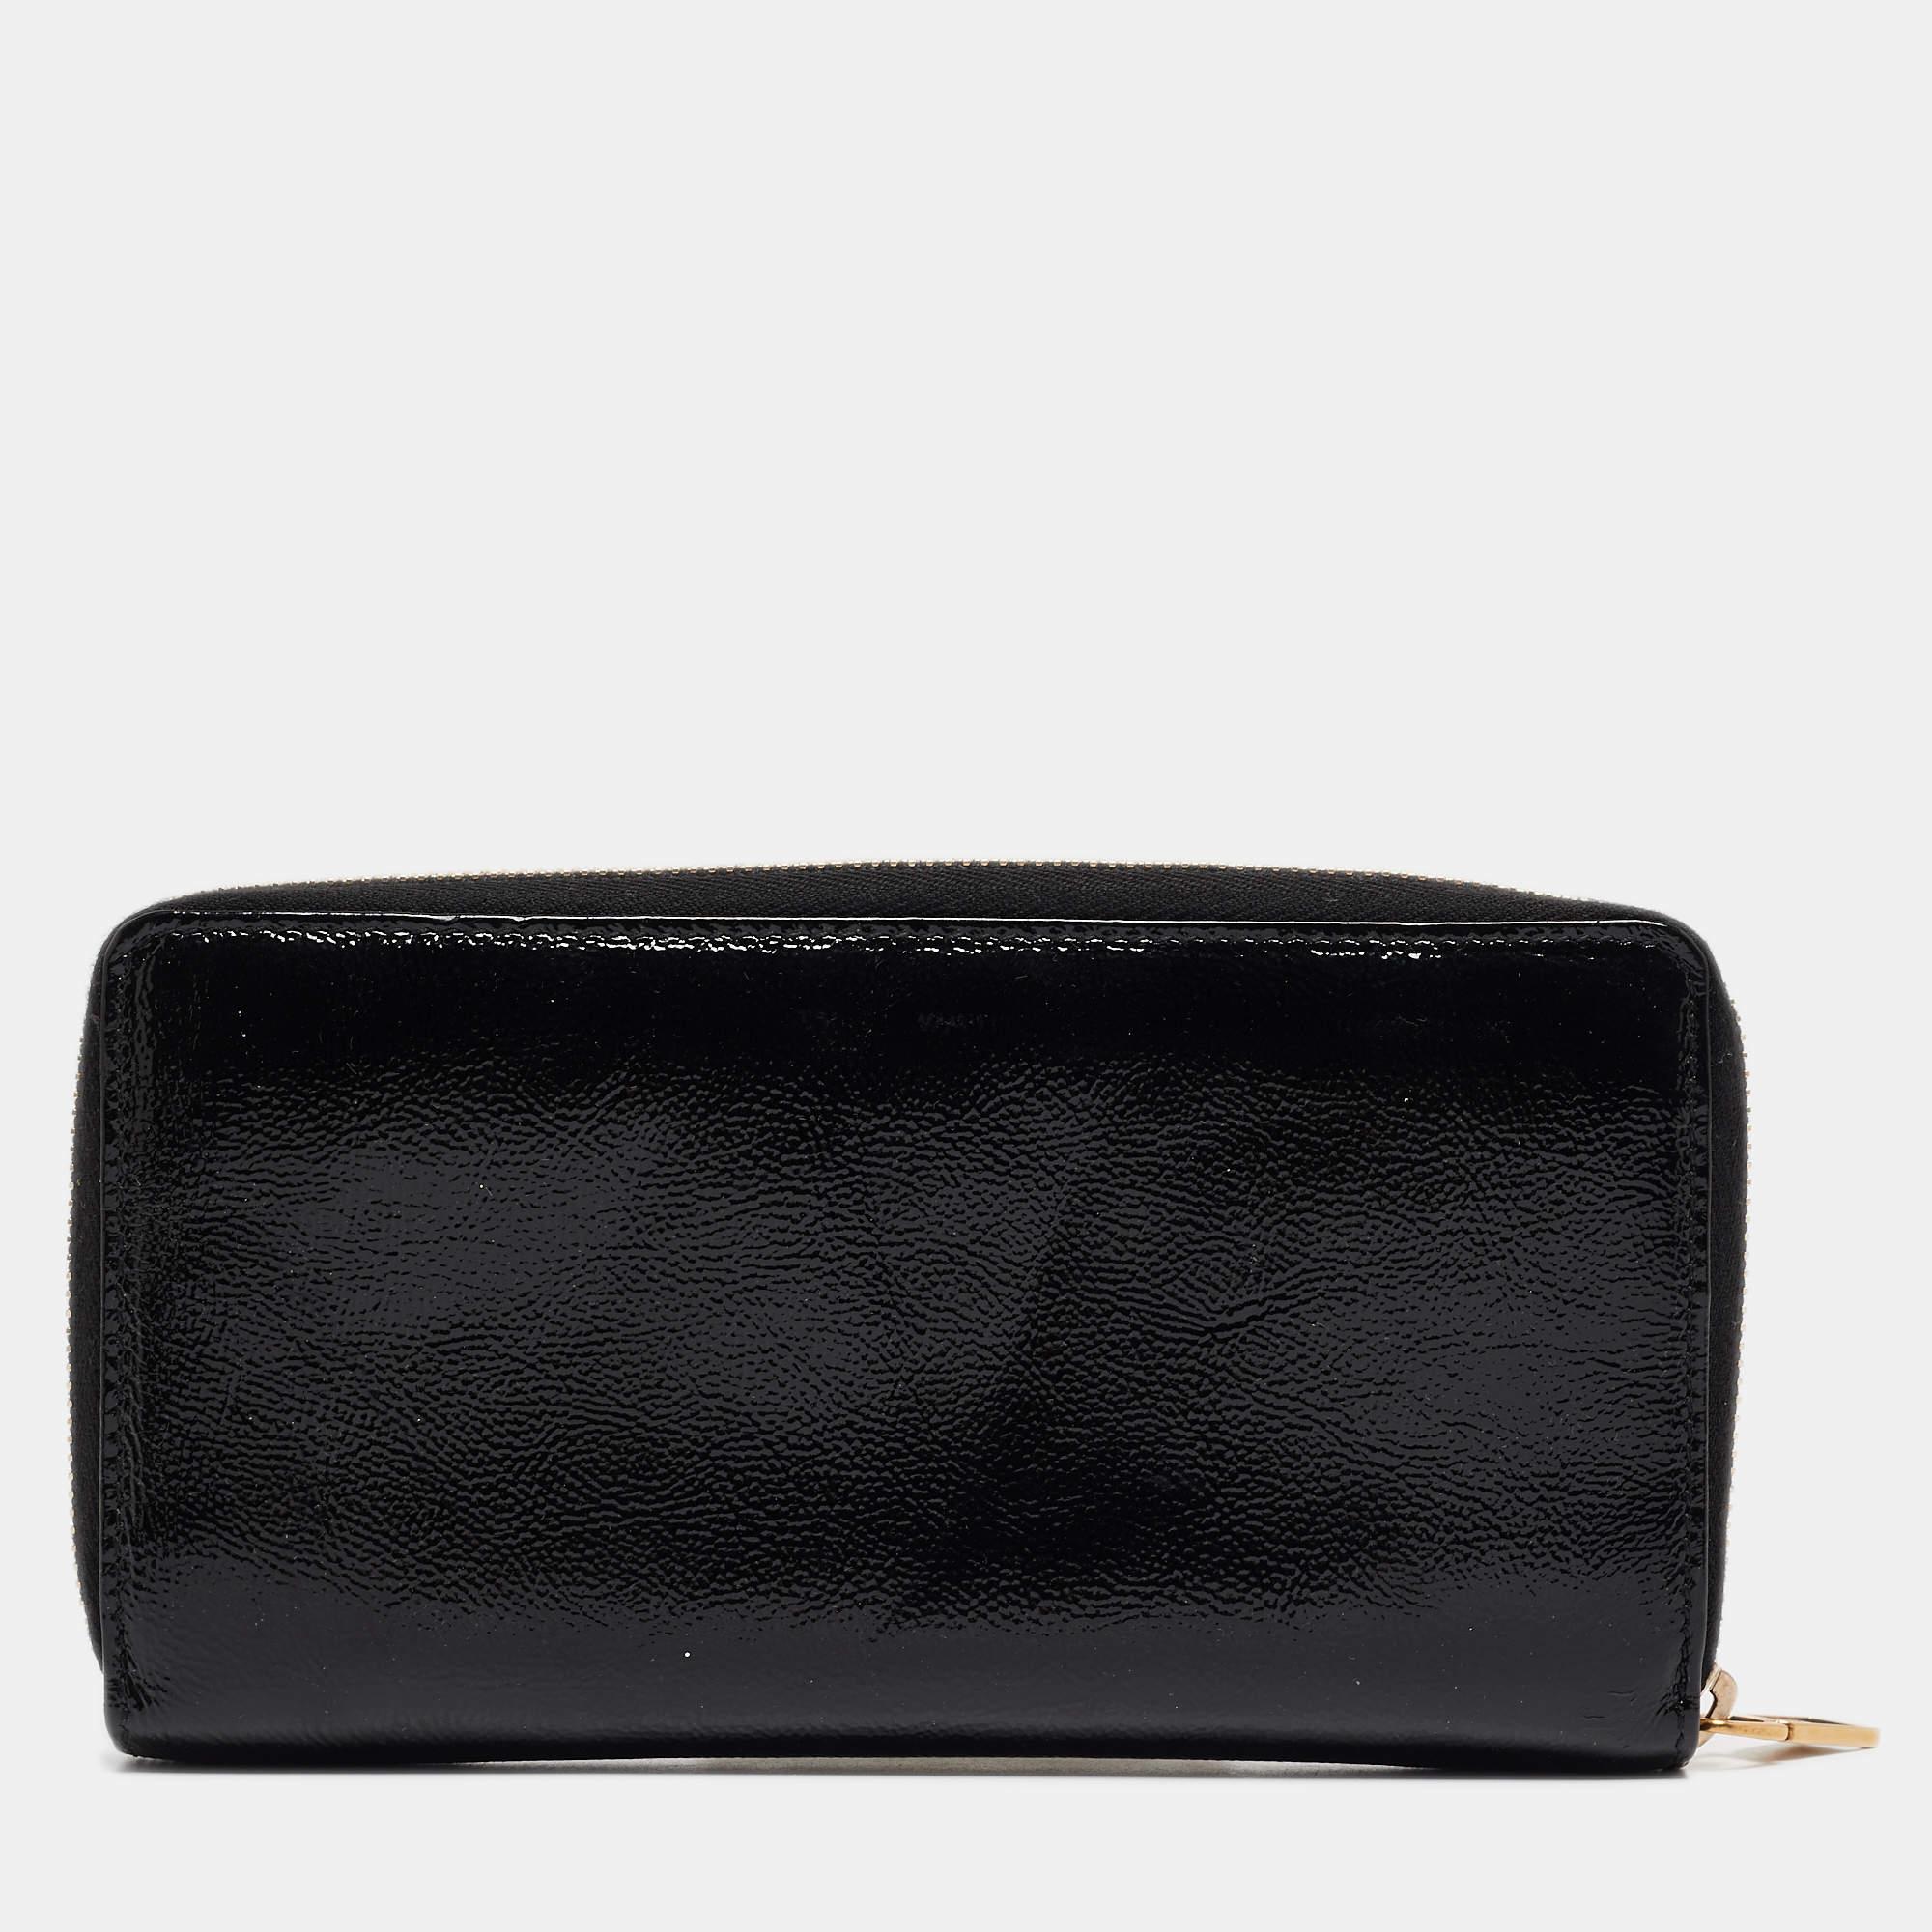 Yves Saint Laurent Black Patent Leather Belle De Jour Zip Around Wallet For Sale 4